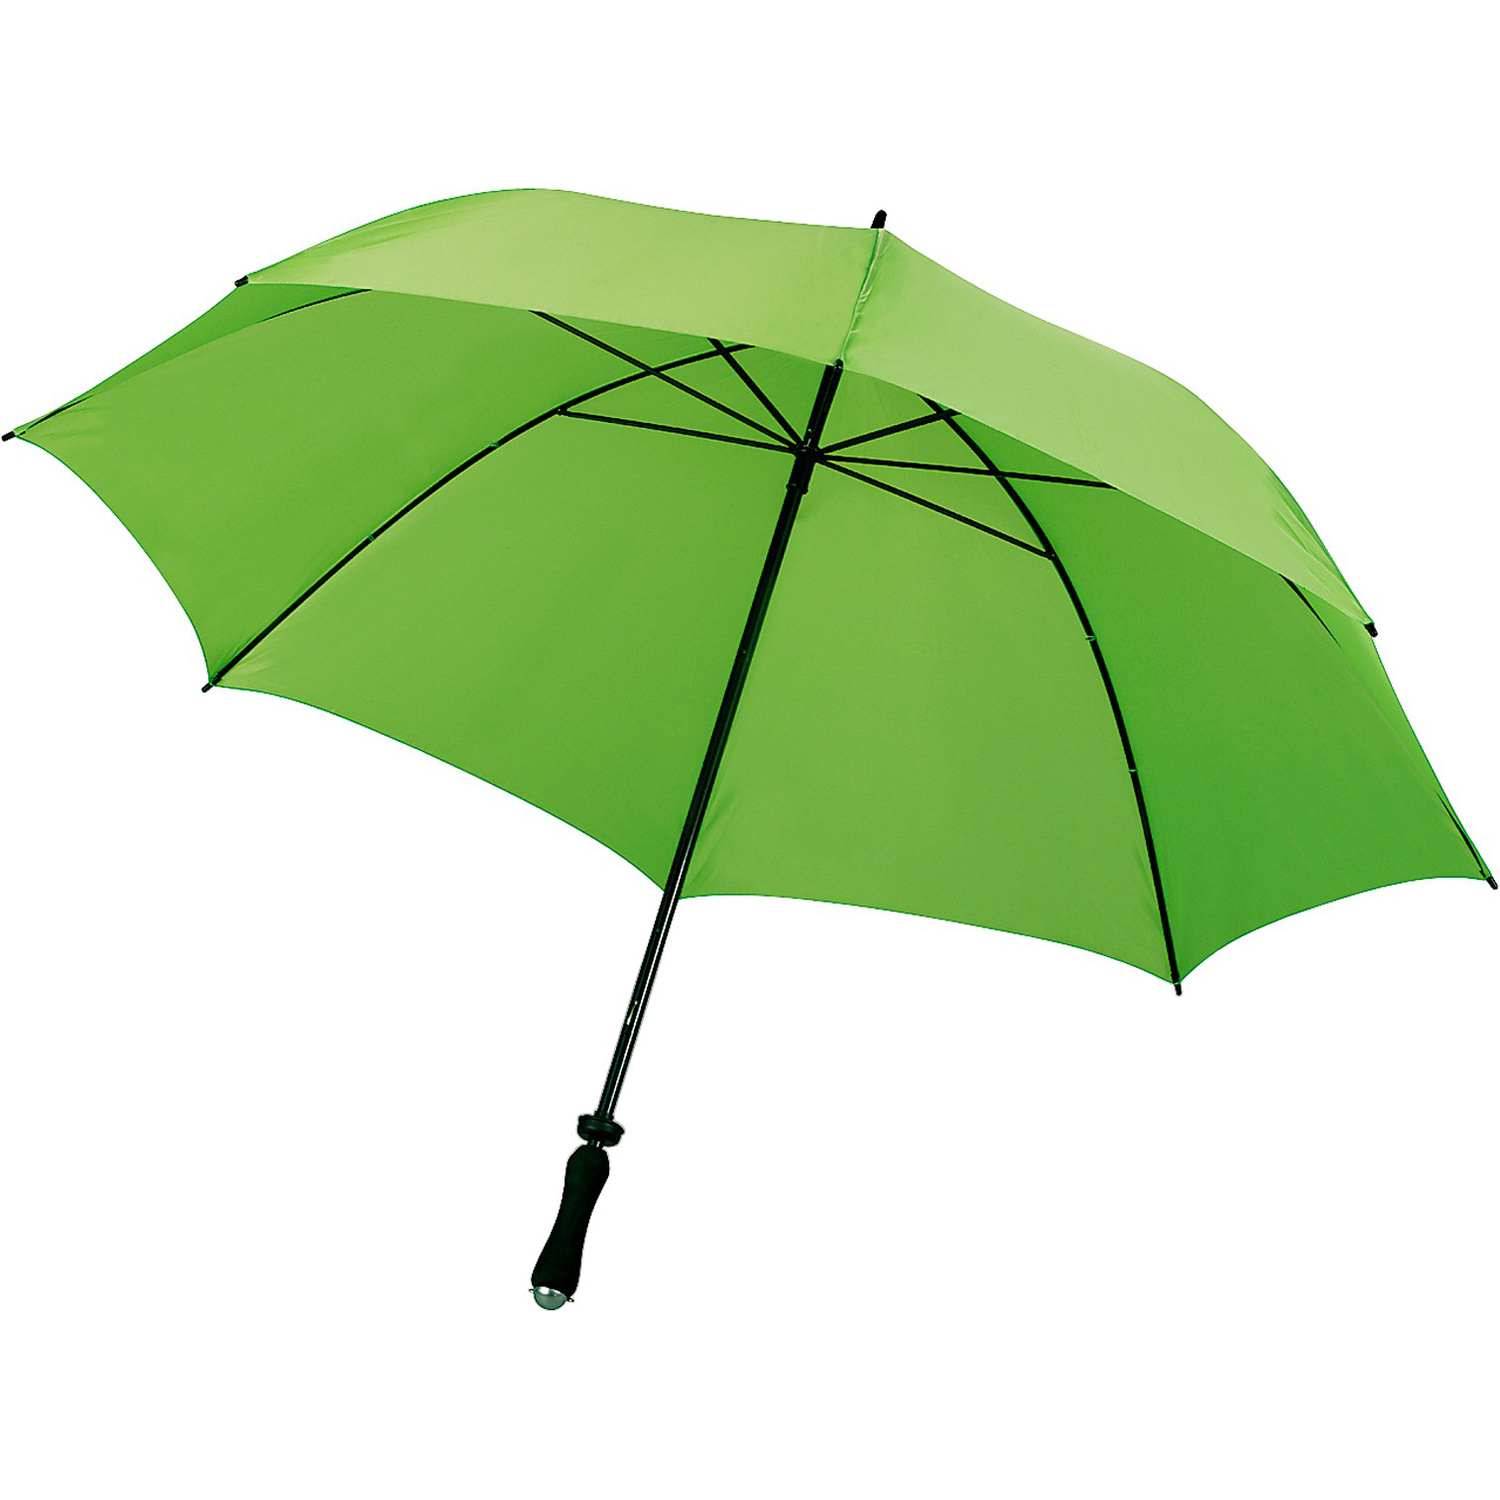 004087 029999999 3d045 ins pro01 fal - Classic nylon umbrella